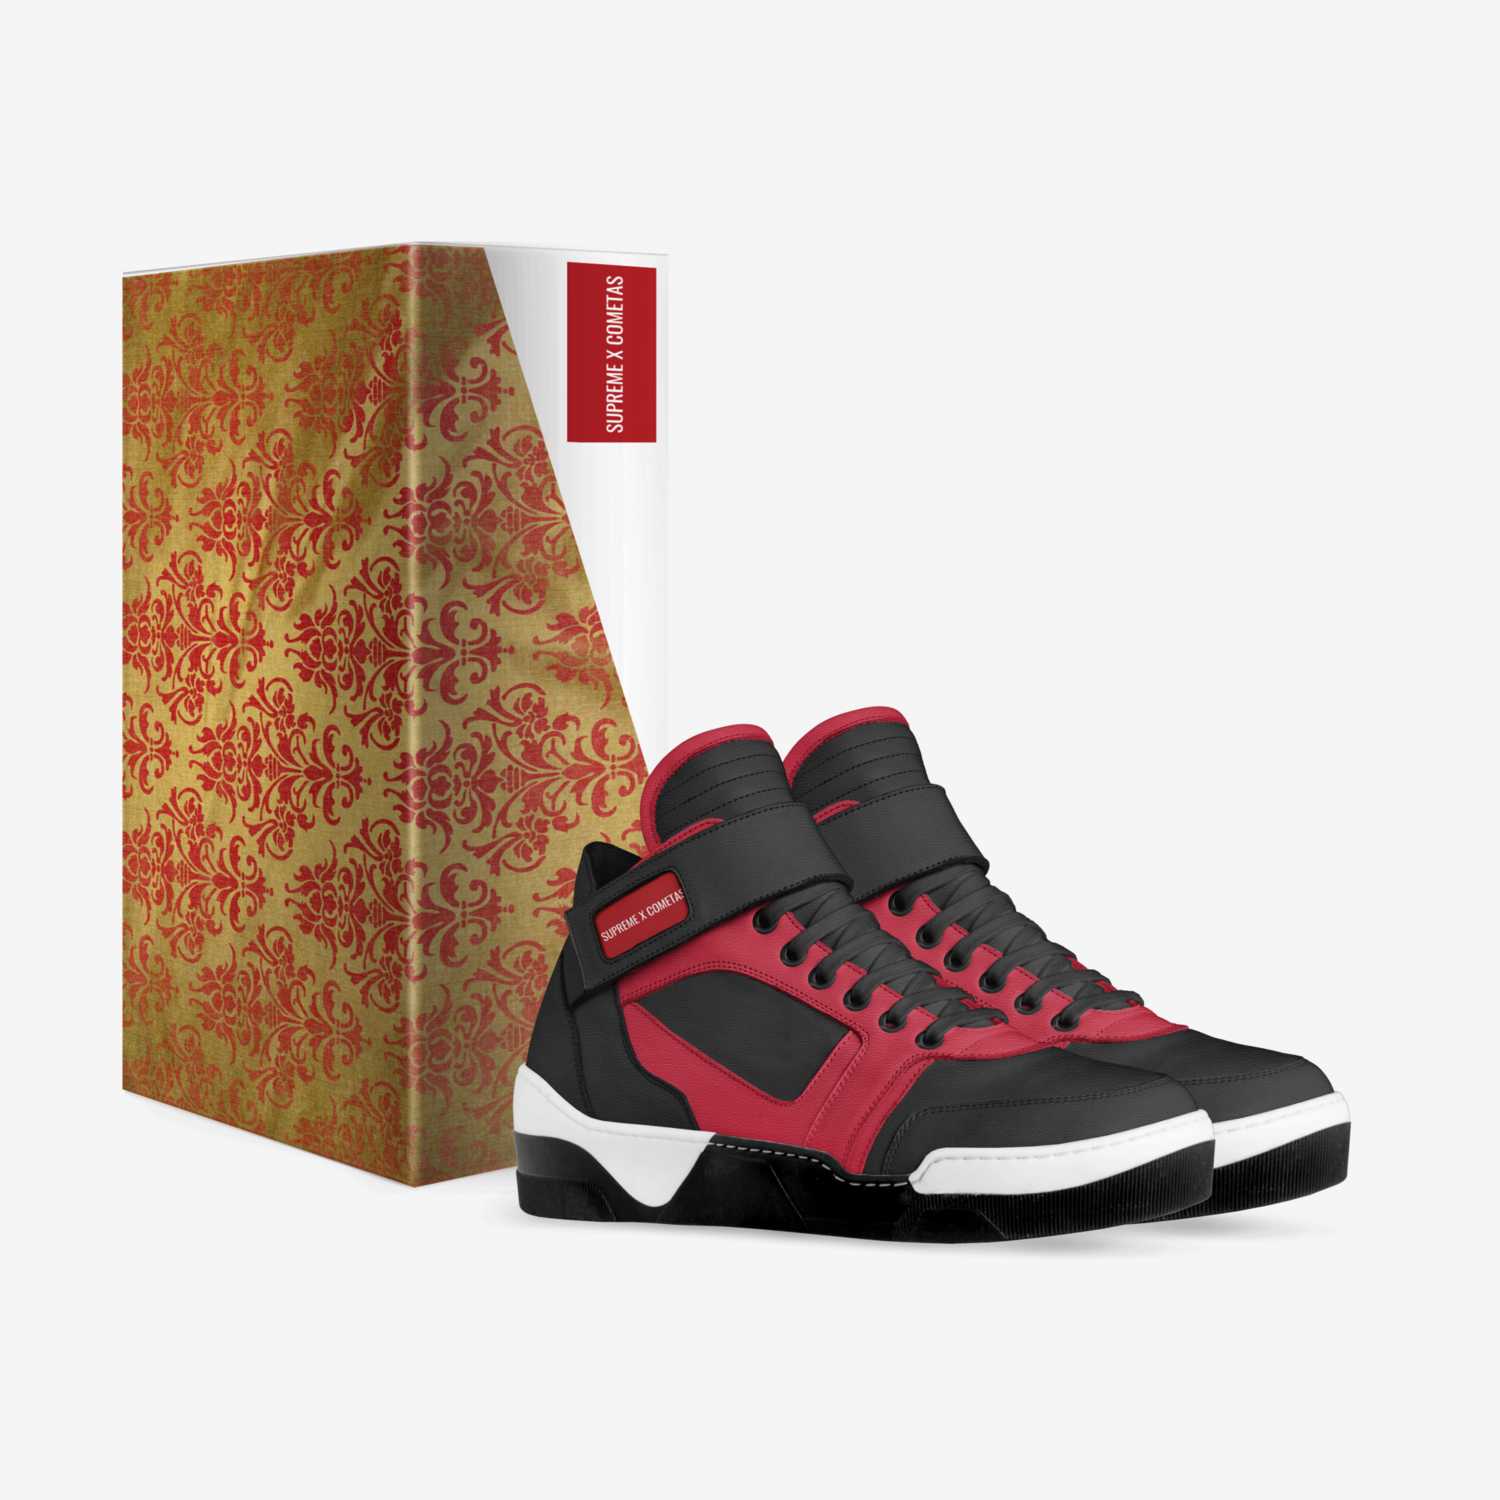 SupXCometas custom made in Italy shoes by Eduardo Vicente | Box view